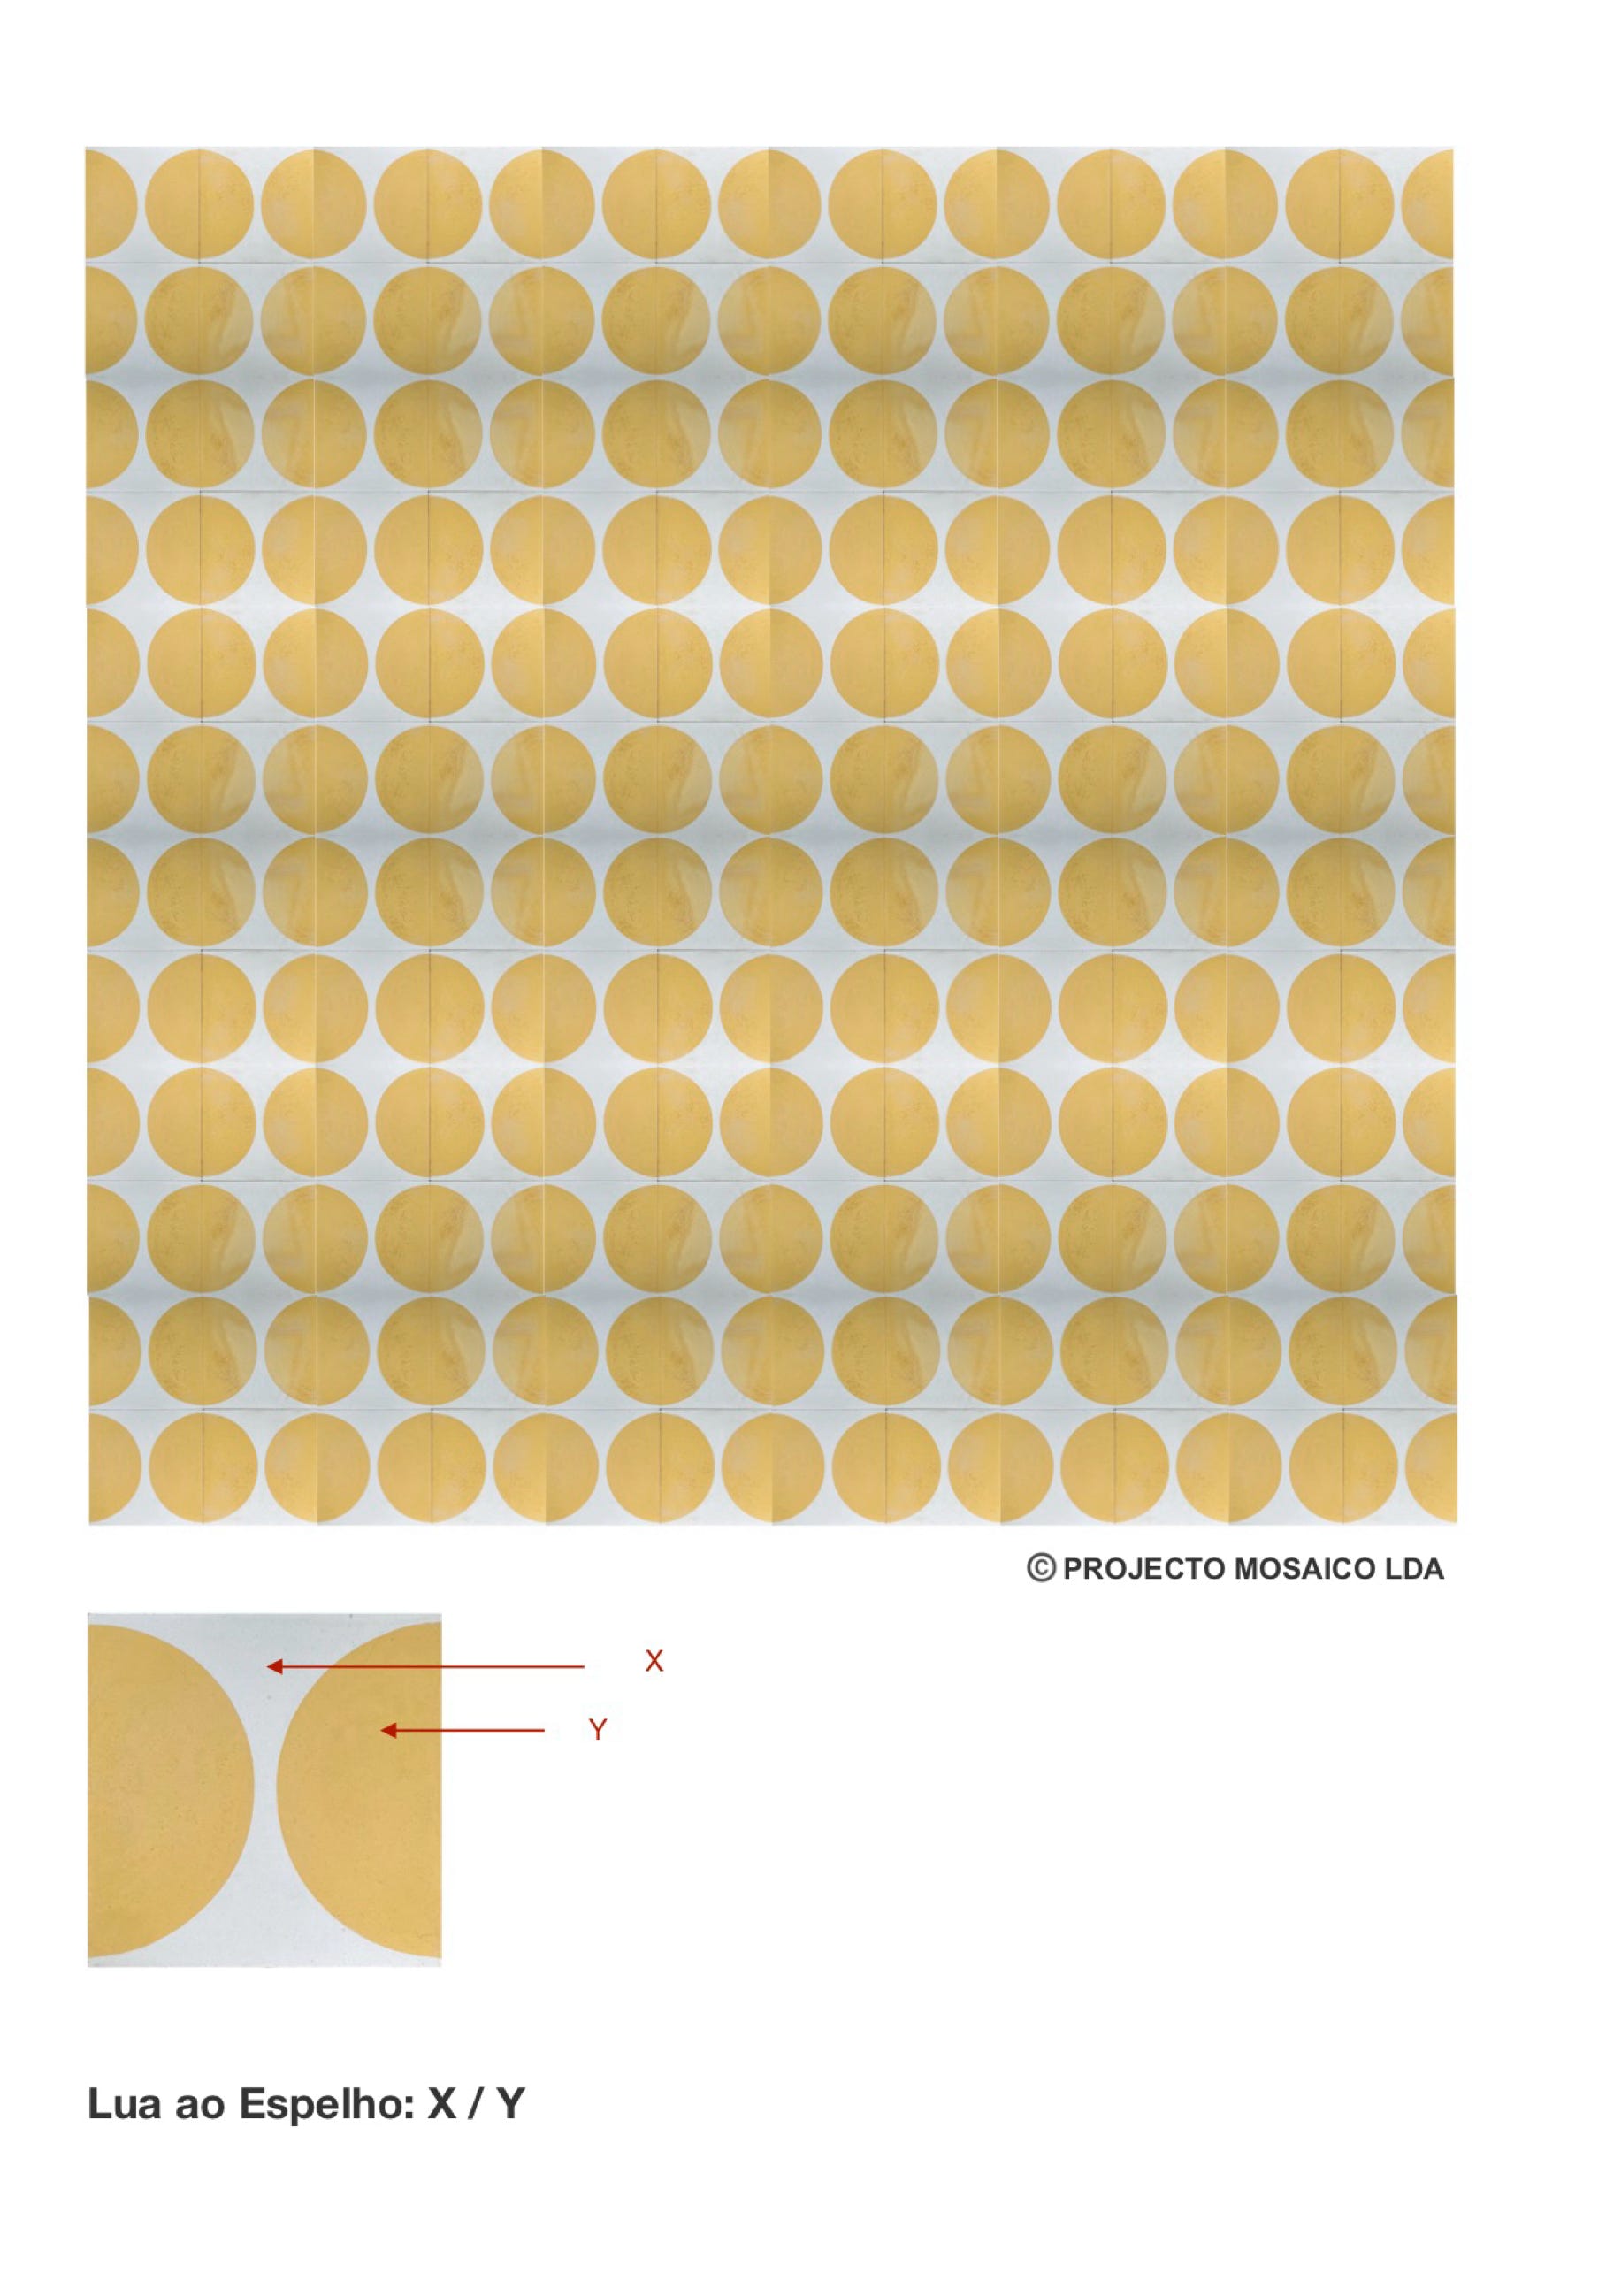 illustração de aplicação do mosaico hidráulico ref: Lua ao Espelho